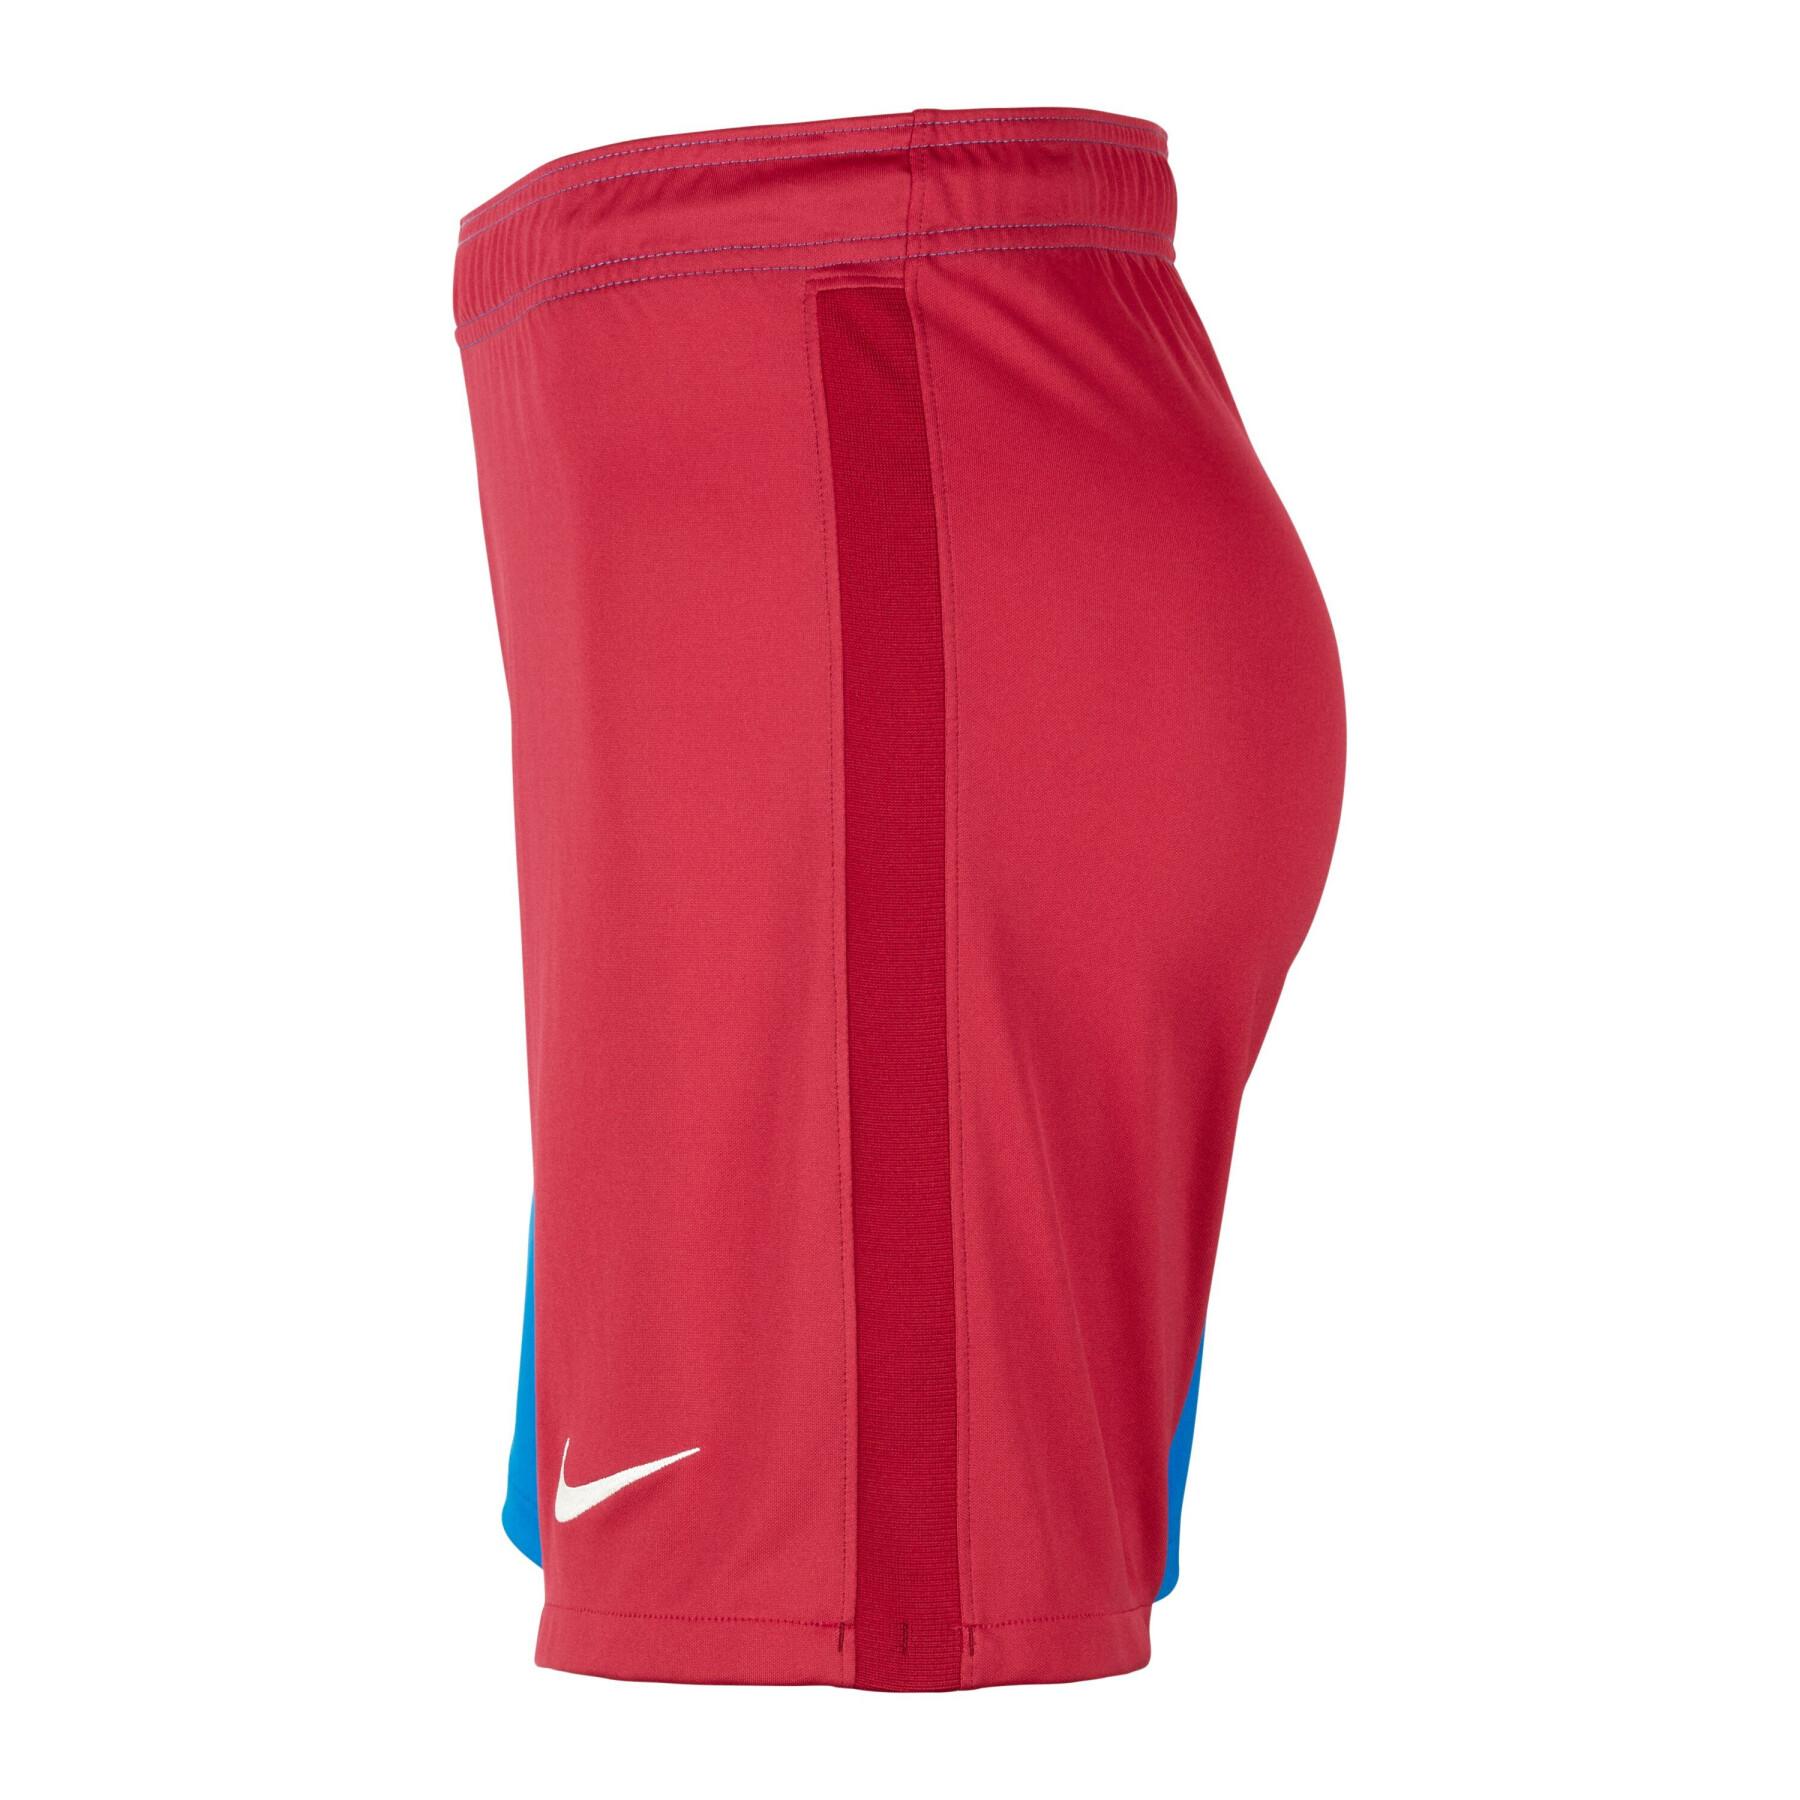 Pantalones cortos para el hogar FC Barcelona 2021/22